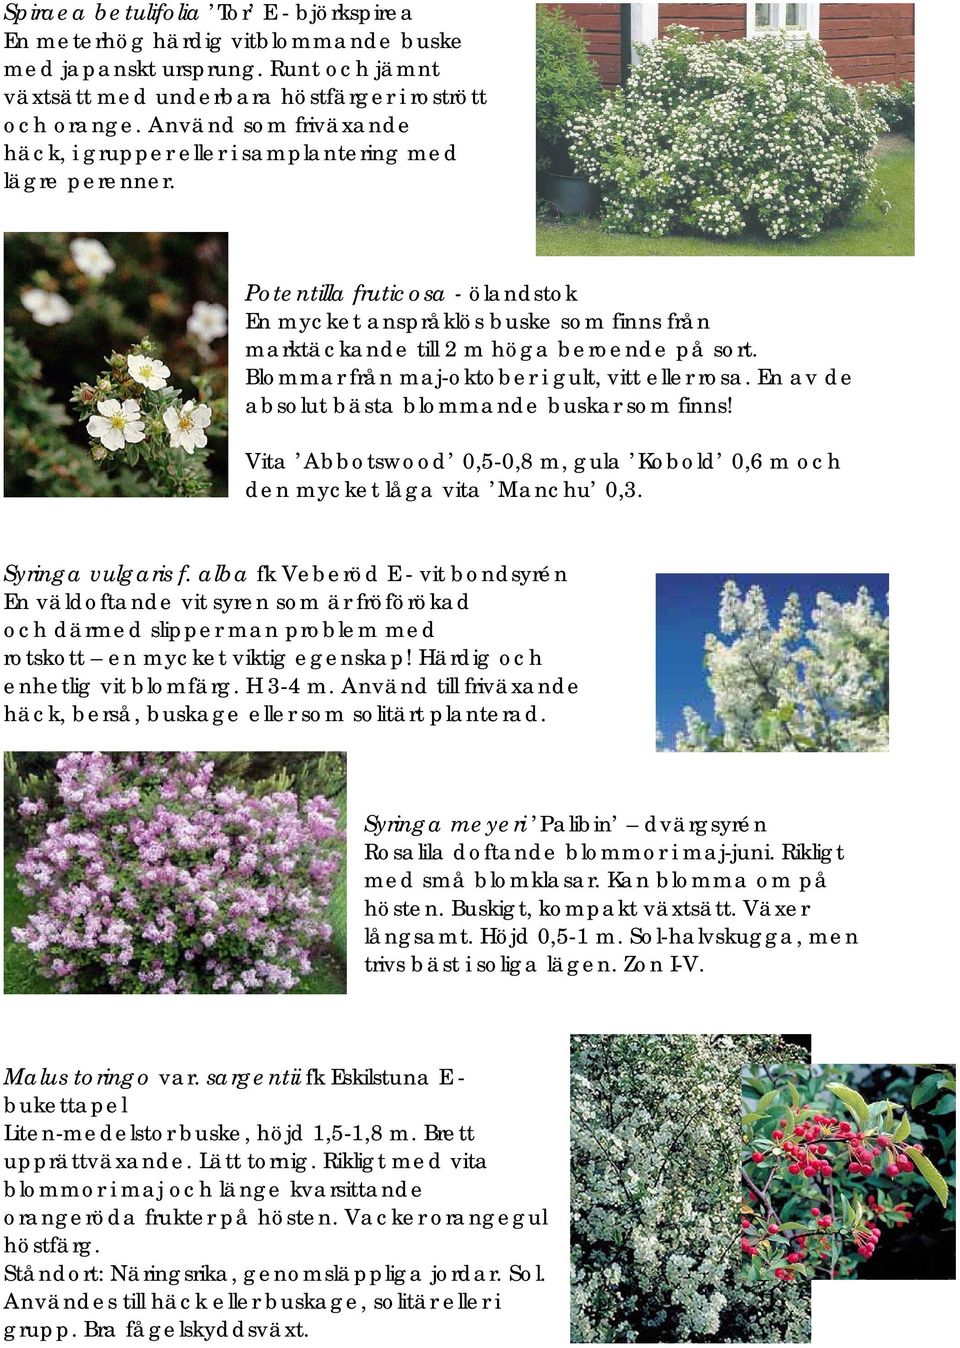 Blommar från maj-oktober i gult, vitt eller rosa. En av de absolut bästa blommande buskar som finns! Vita Abbotswood 0,5-0,8 m, gula Kobold 0,6 m och den mycket låga vita Manchu 0,3.